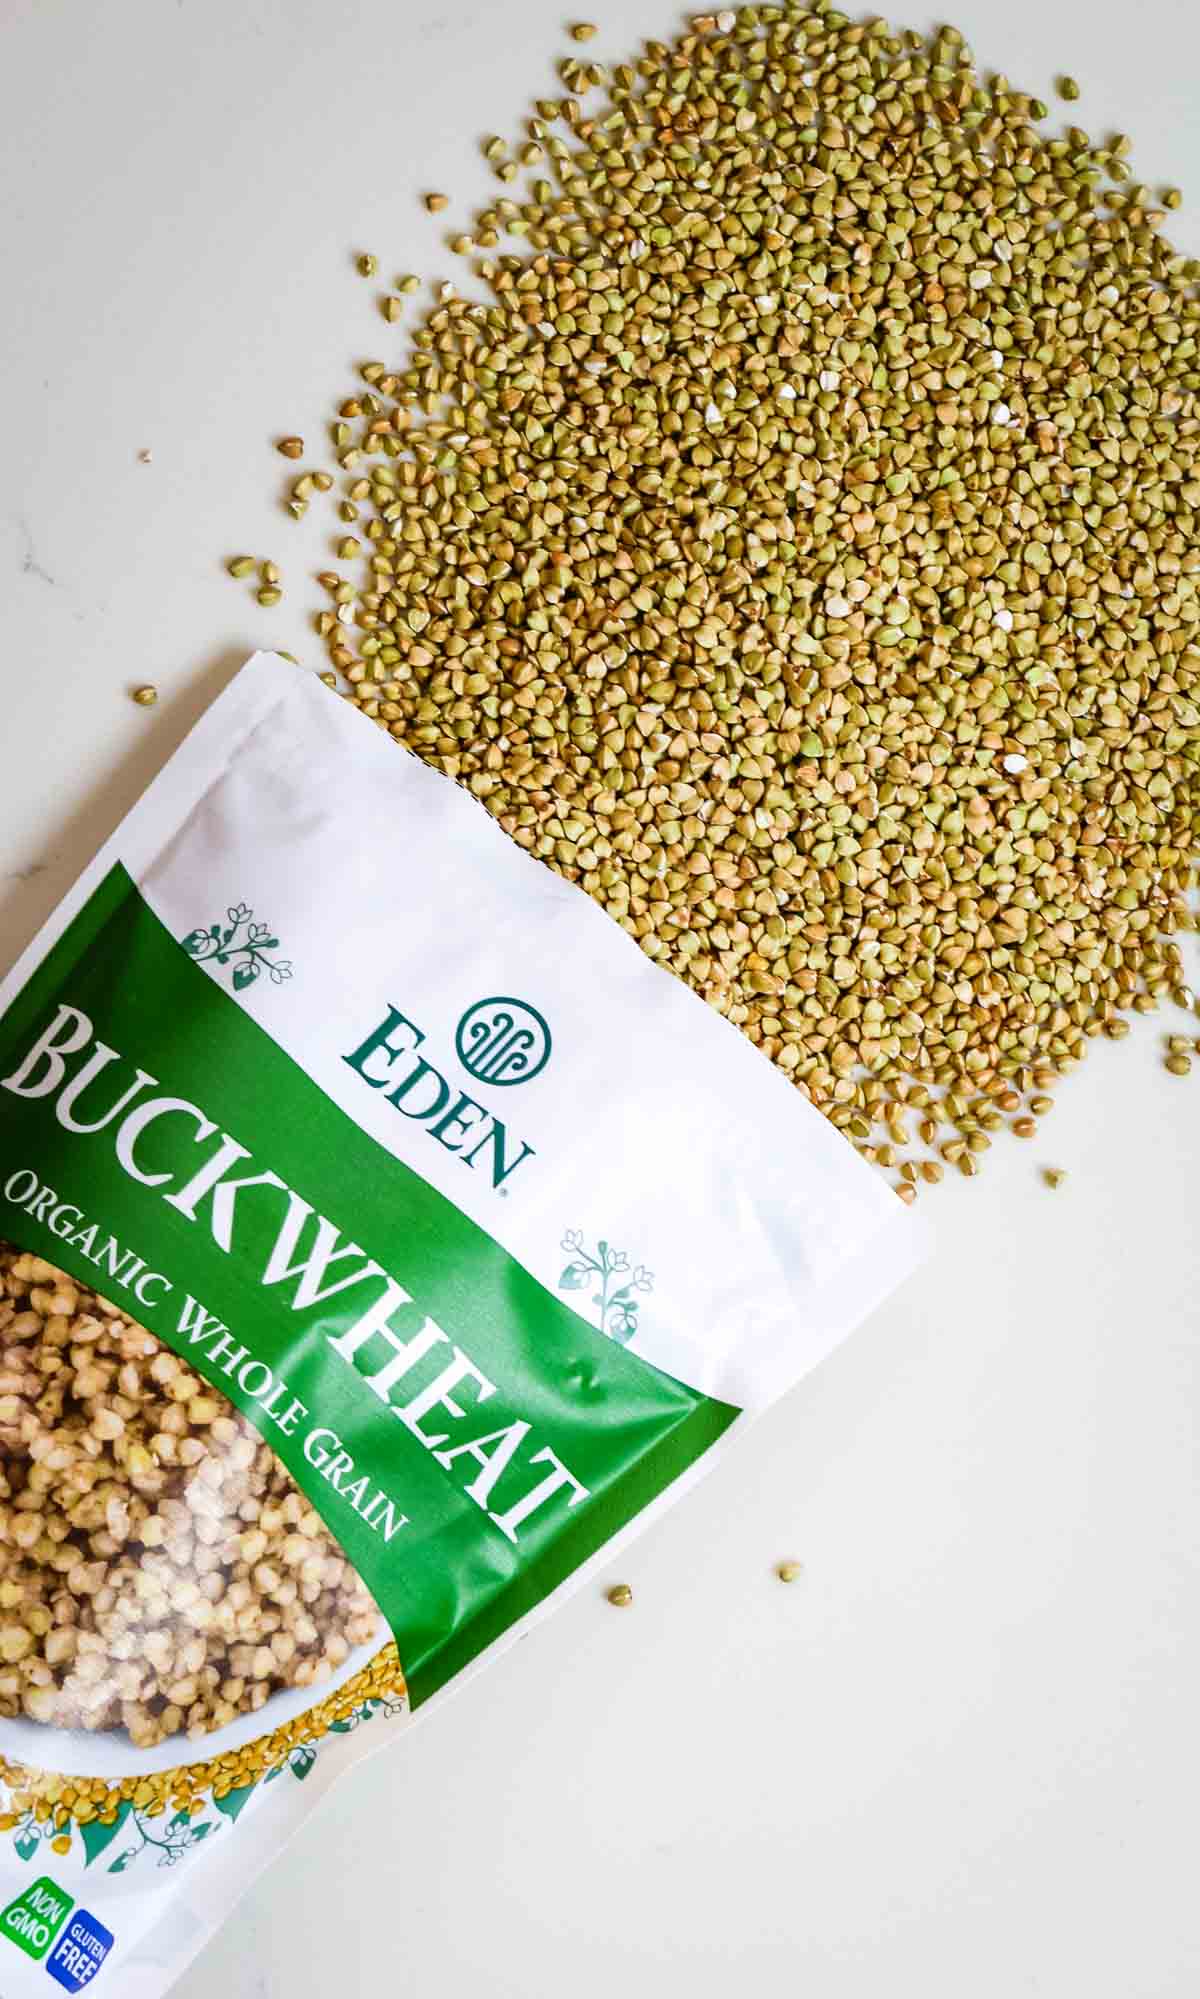 Eden organic buckwheat groats